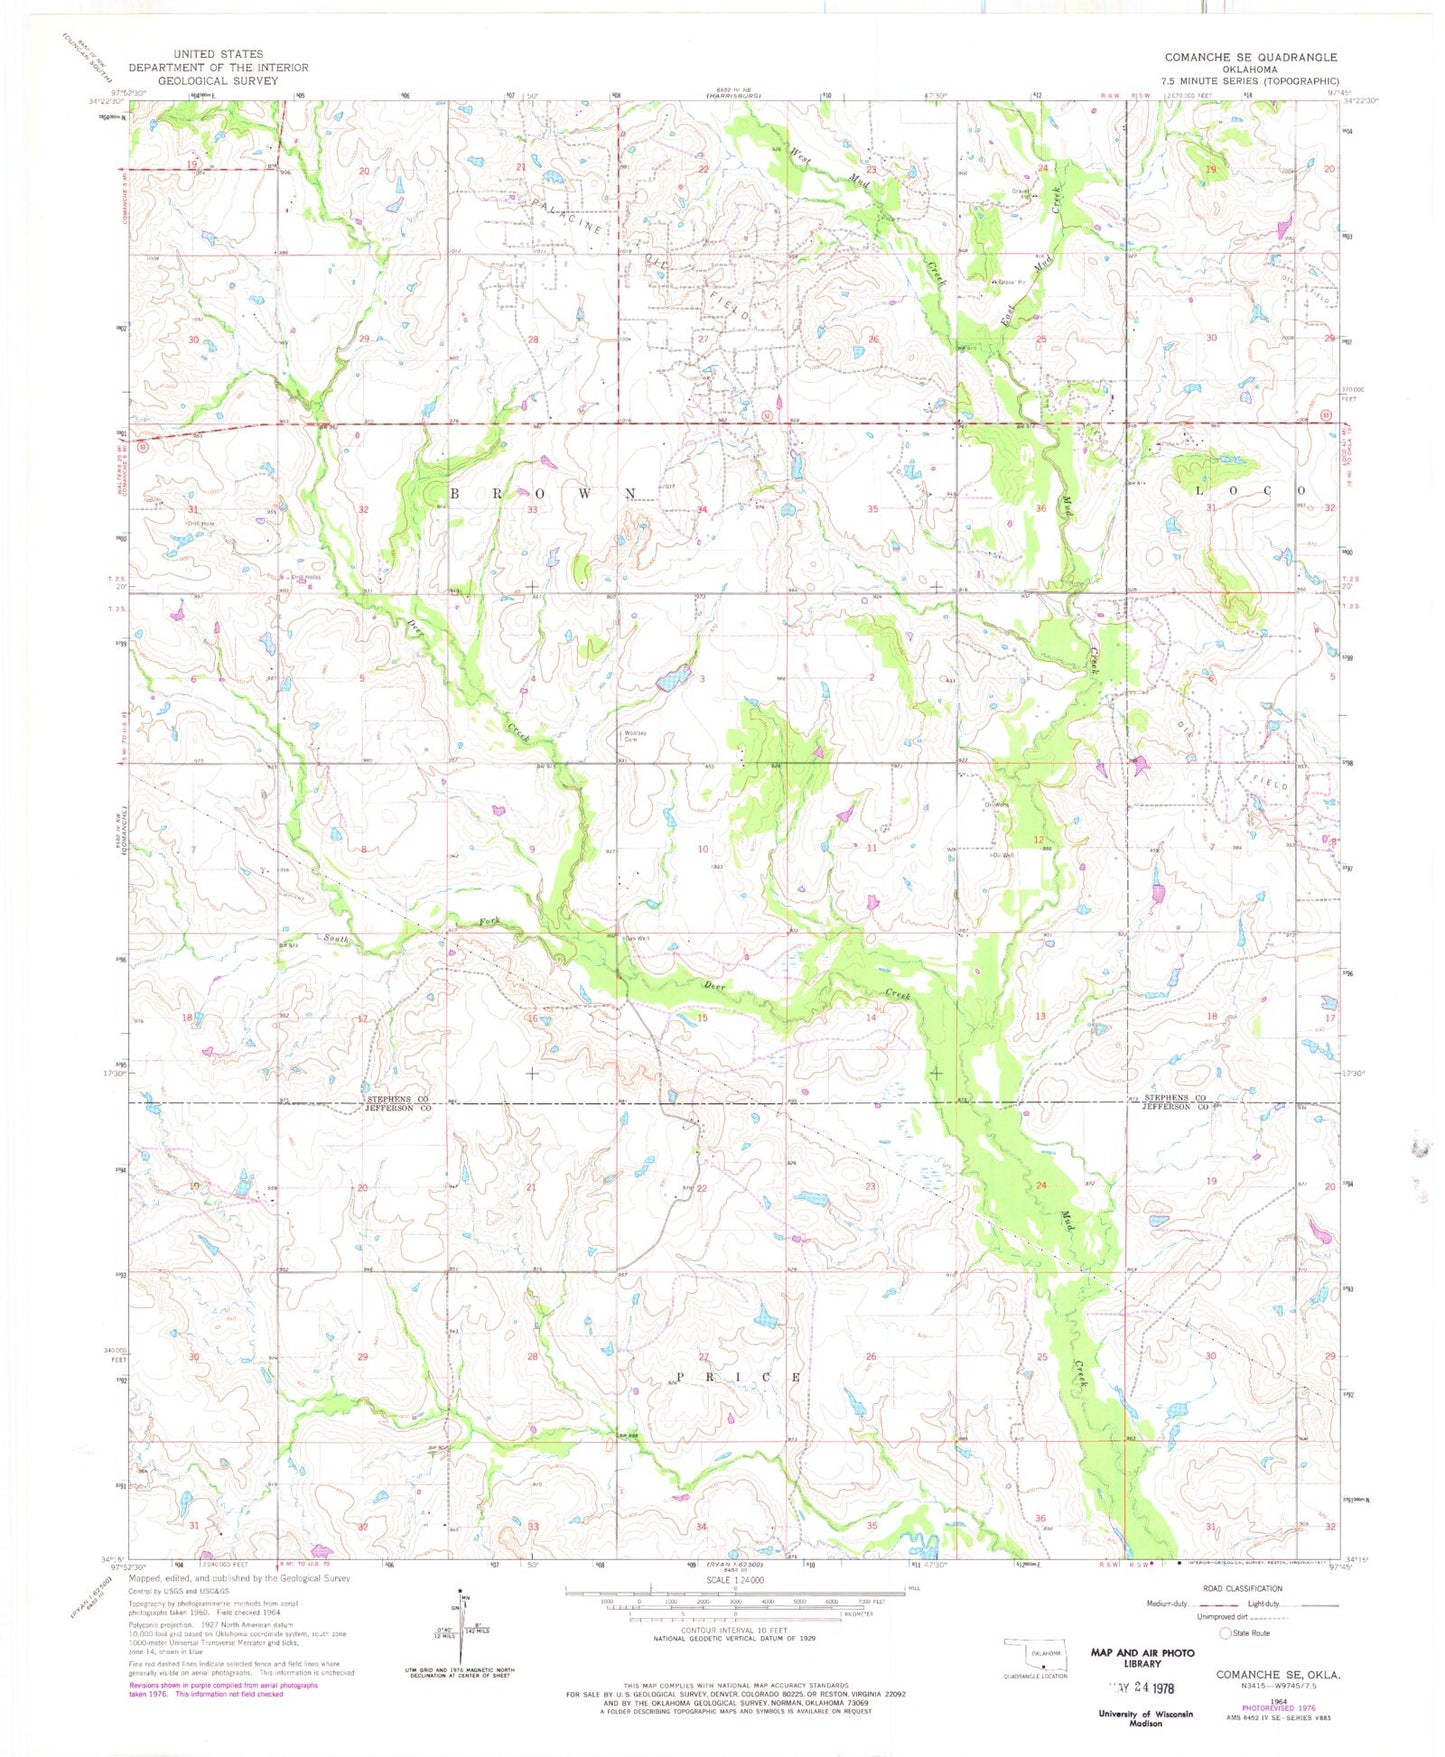 Classic USGS Comanche SE Oklahoma 7.5'x7.5' Topo Map Image